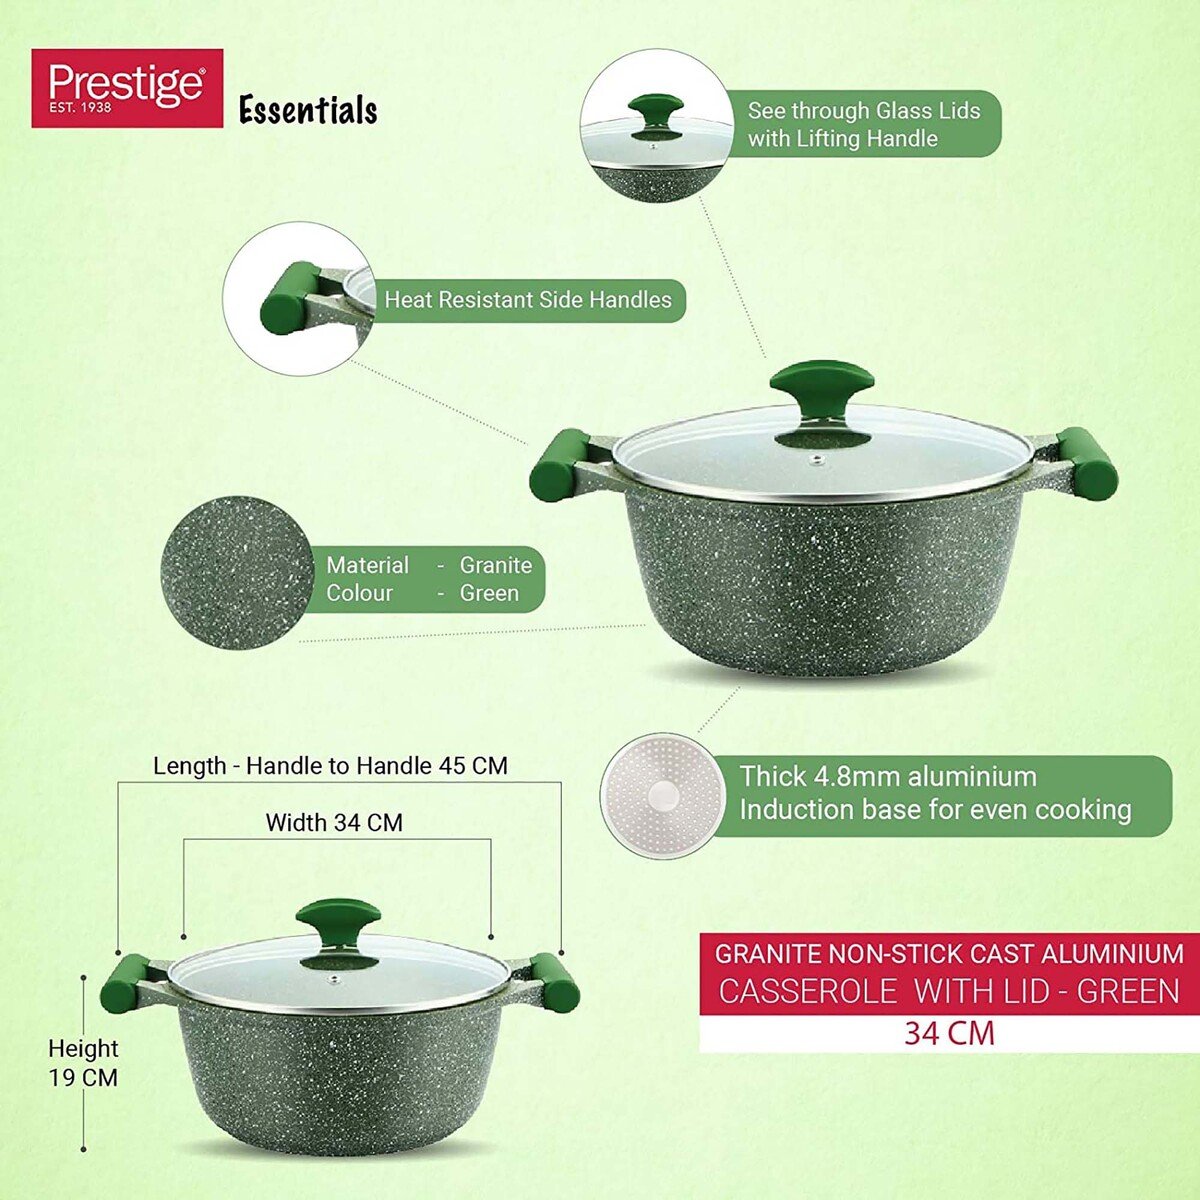 Prestige Essentials Granite Non-Stick Cast AluminiumCasserole with Lid, 34 cm, Green, PR81114